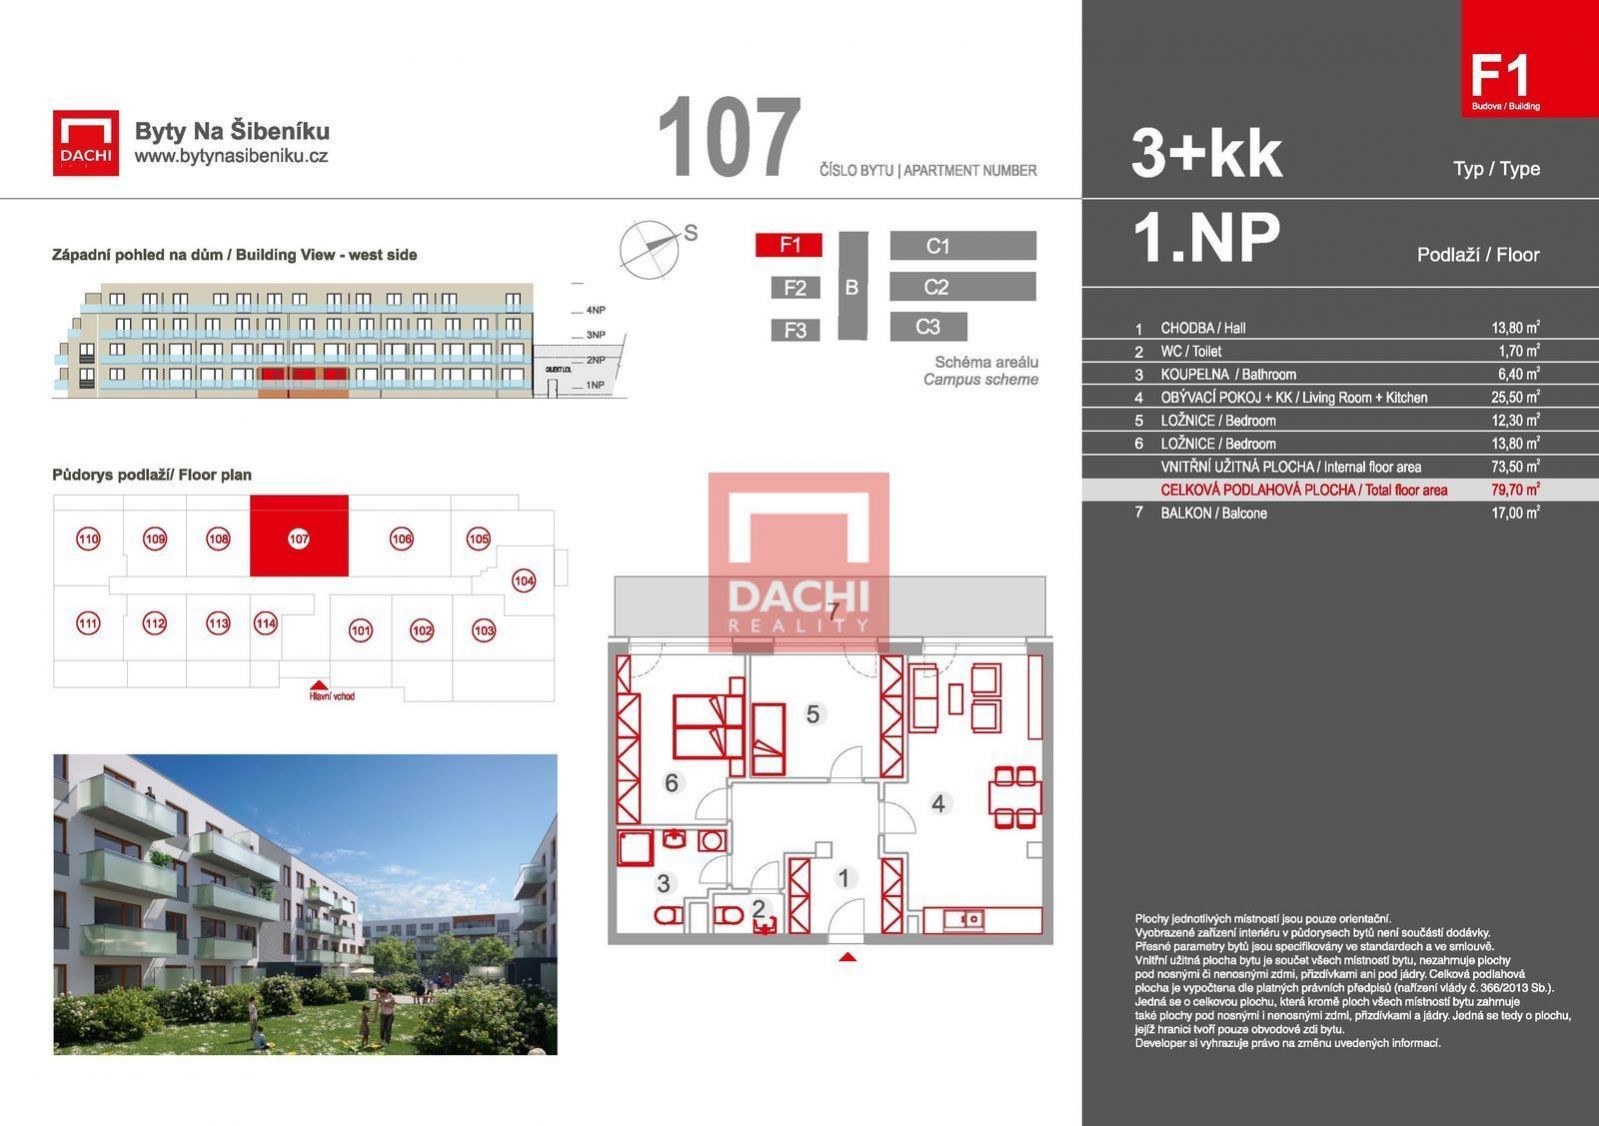 Prodej novostavby bytu F1.107  3+kk  79,70m s balkonem 17m, Olomouc, Byty Na Šibeníku II.etapa, obrázek č. 3